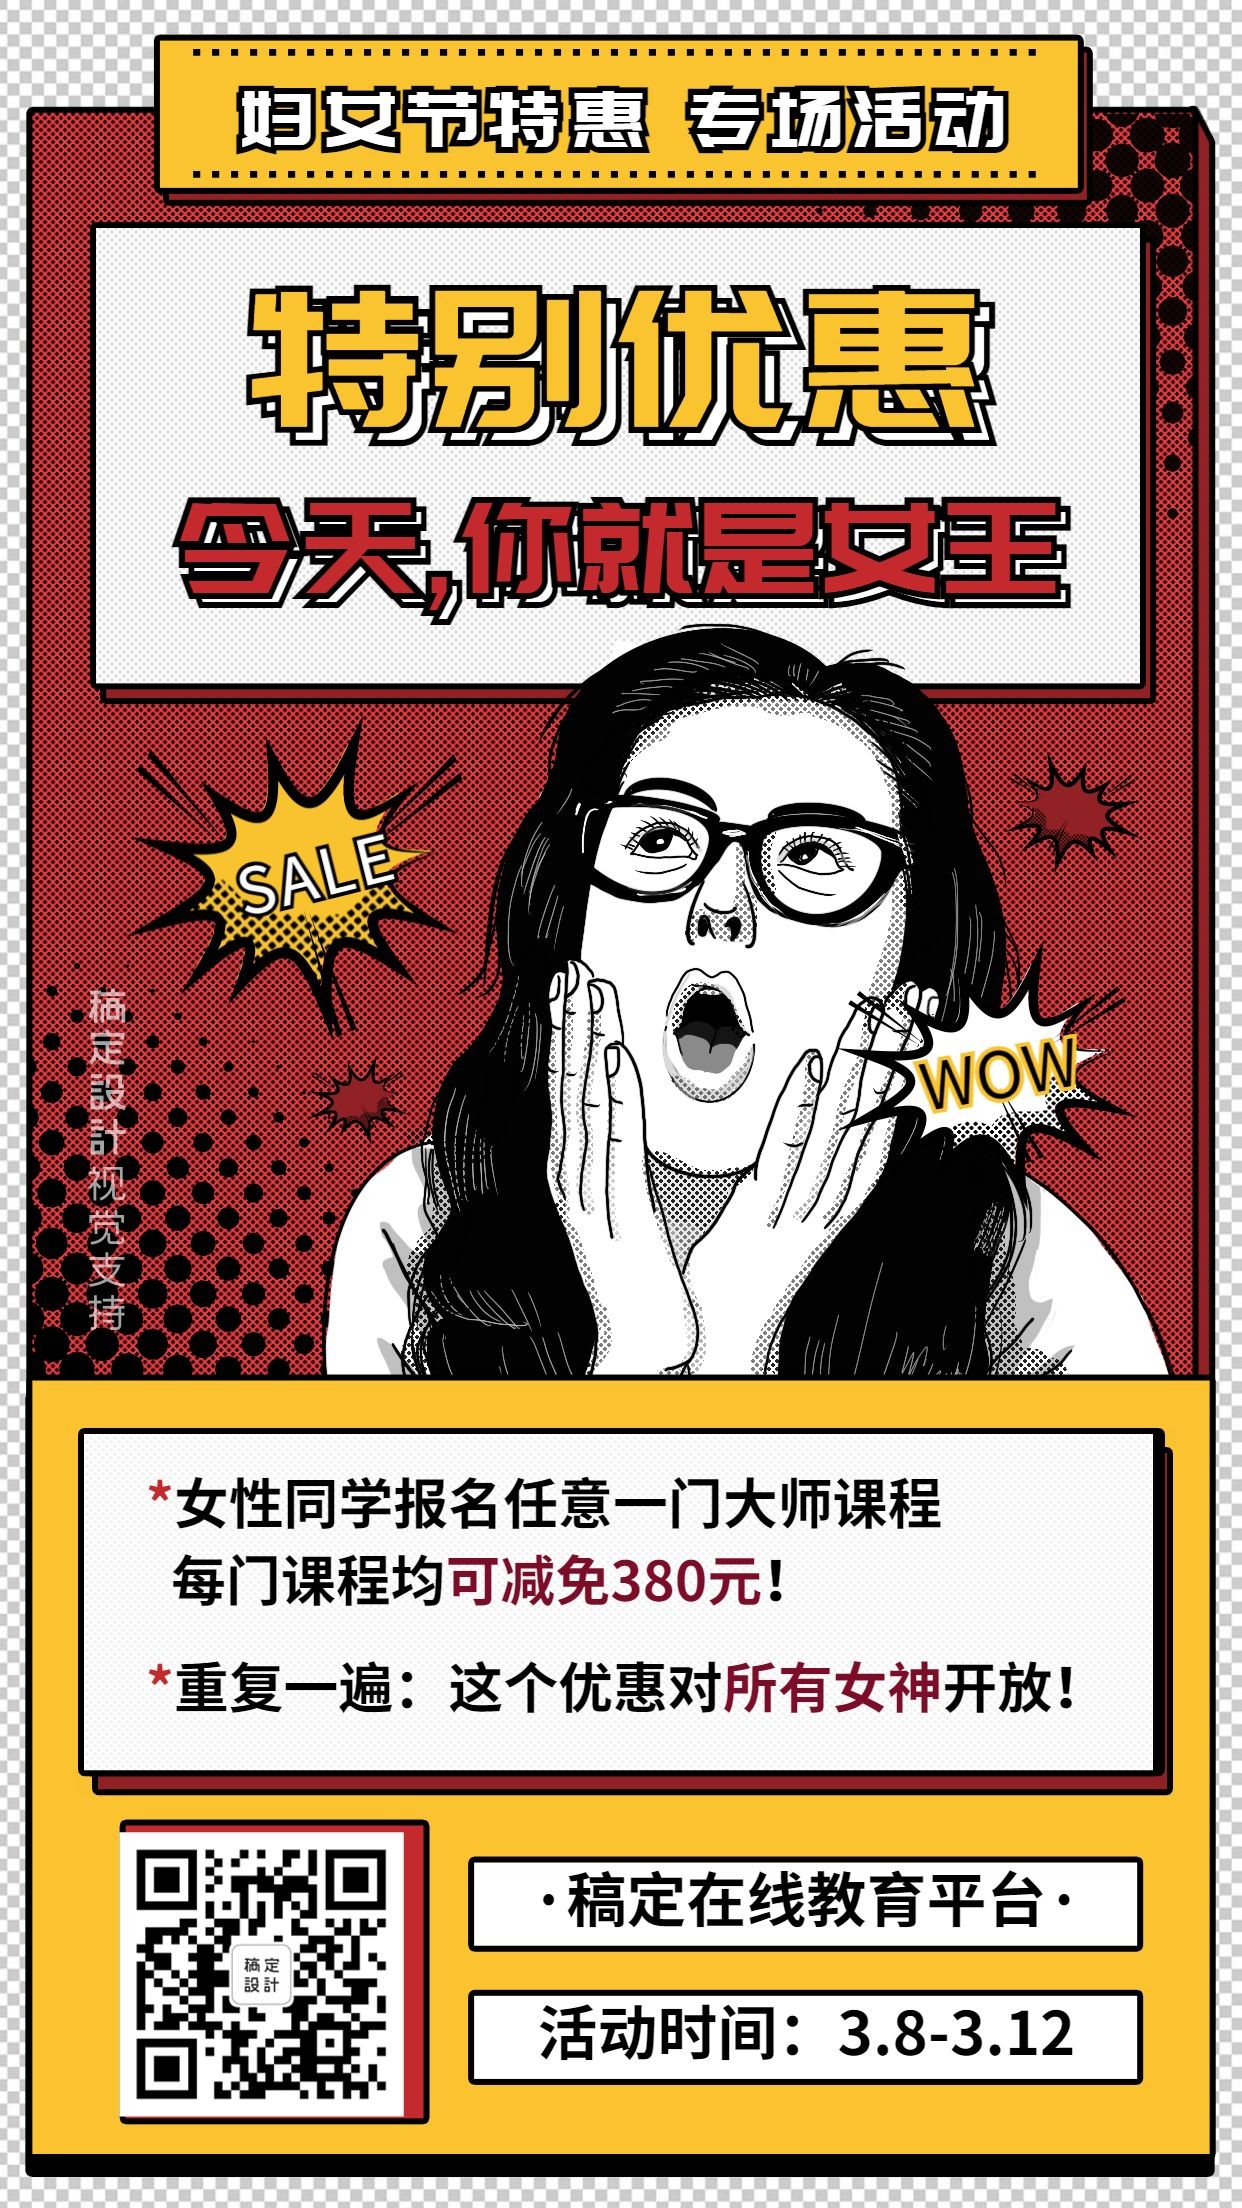 妇女节课程优惠促销宣传海报预览效果